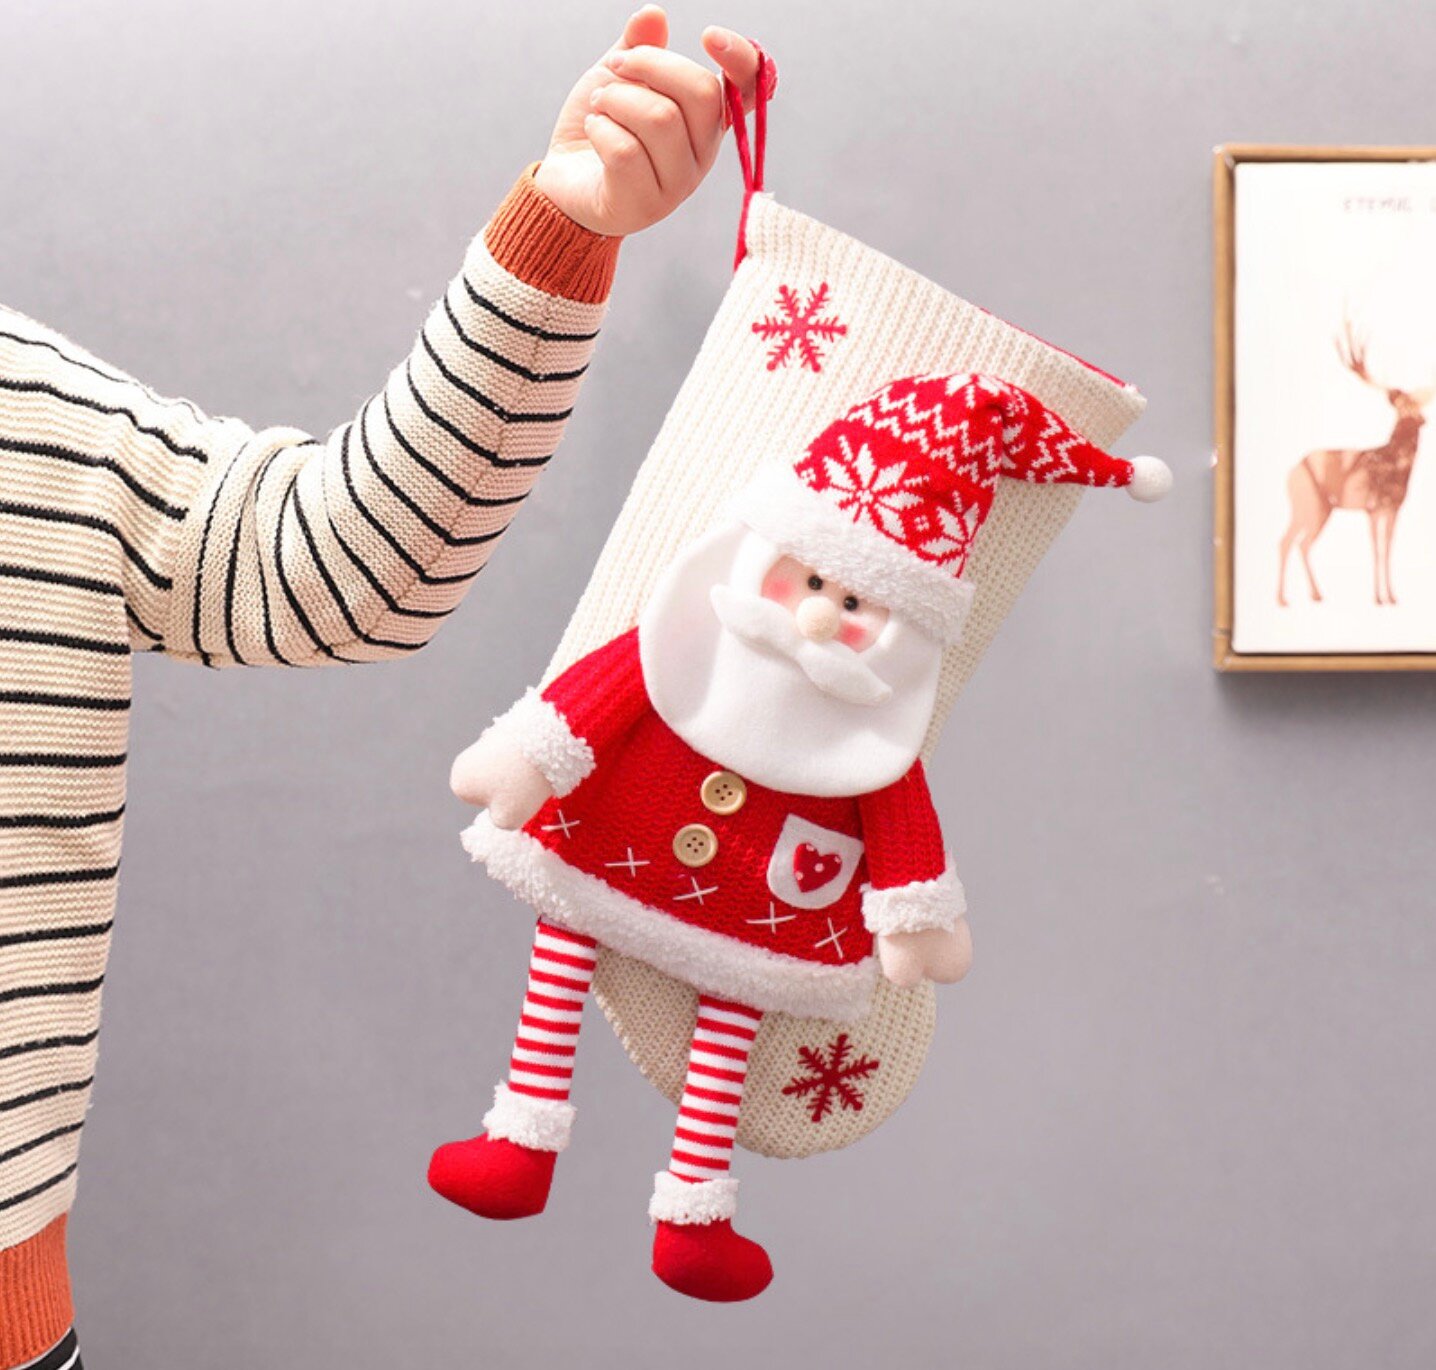 Рождественские высококачественные вязаные носки-чулки "Дед Мороз". Новогоднее украшение, креативный, красивый подарок-сувенир. Можно испо.